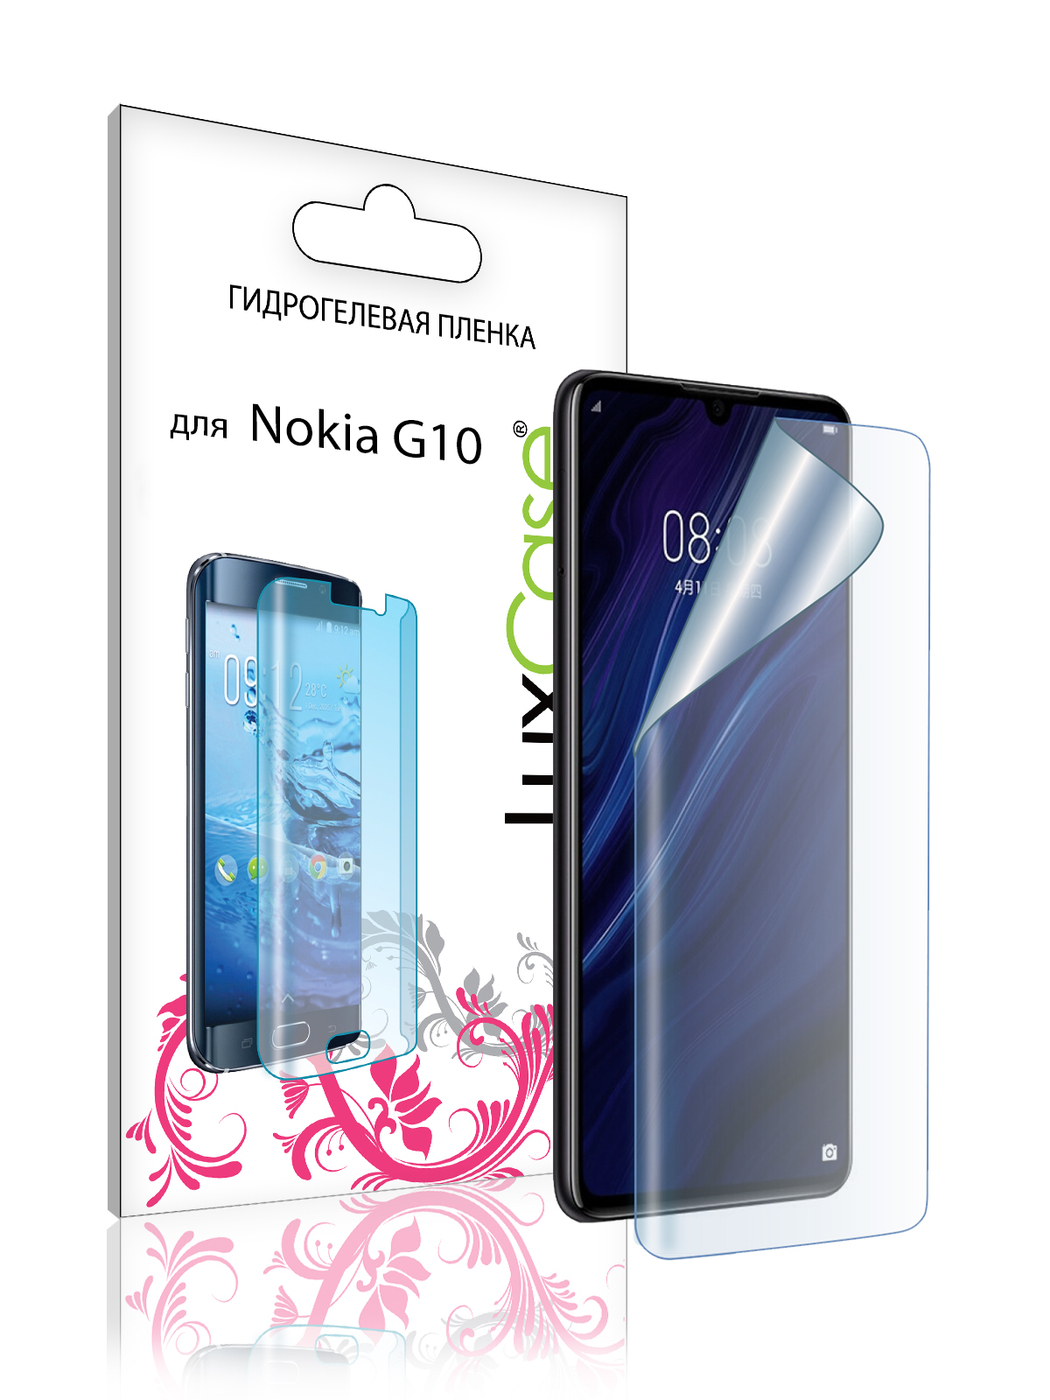 Пленка гидрогелевая LuxCase для Nokia G20 Front Transparent 86392 гидрогелевая пленка luxcase для nokia g20 back transparent 86393